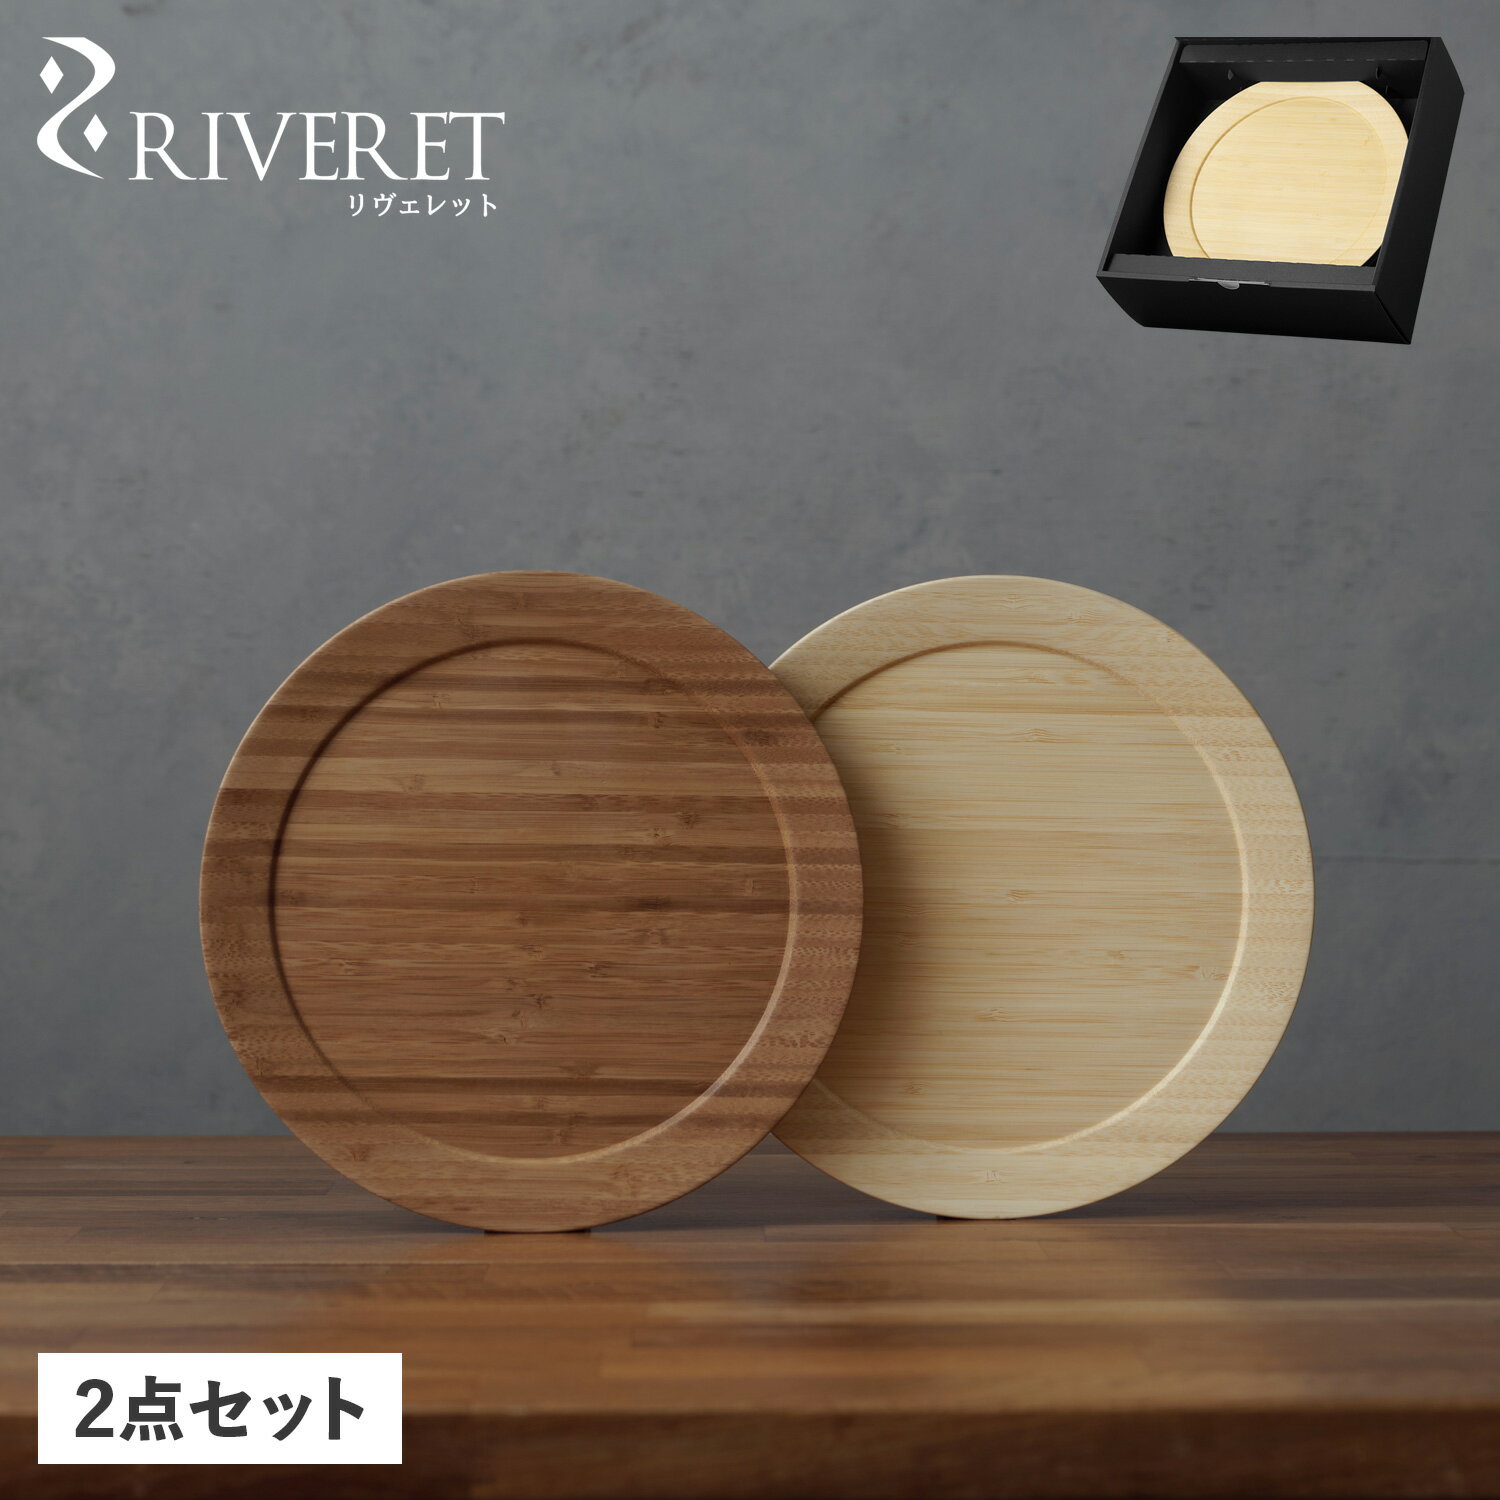 リヴェレット RIVERET 食器 皿 ディナープレート L ペア 2点セット Lサイズ 天然素材 日本製 軽量 食洗器対応 リベレット DINNER PLATE ホワイト ブラウン 白 RV-406WB 母の日